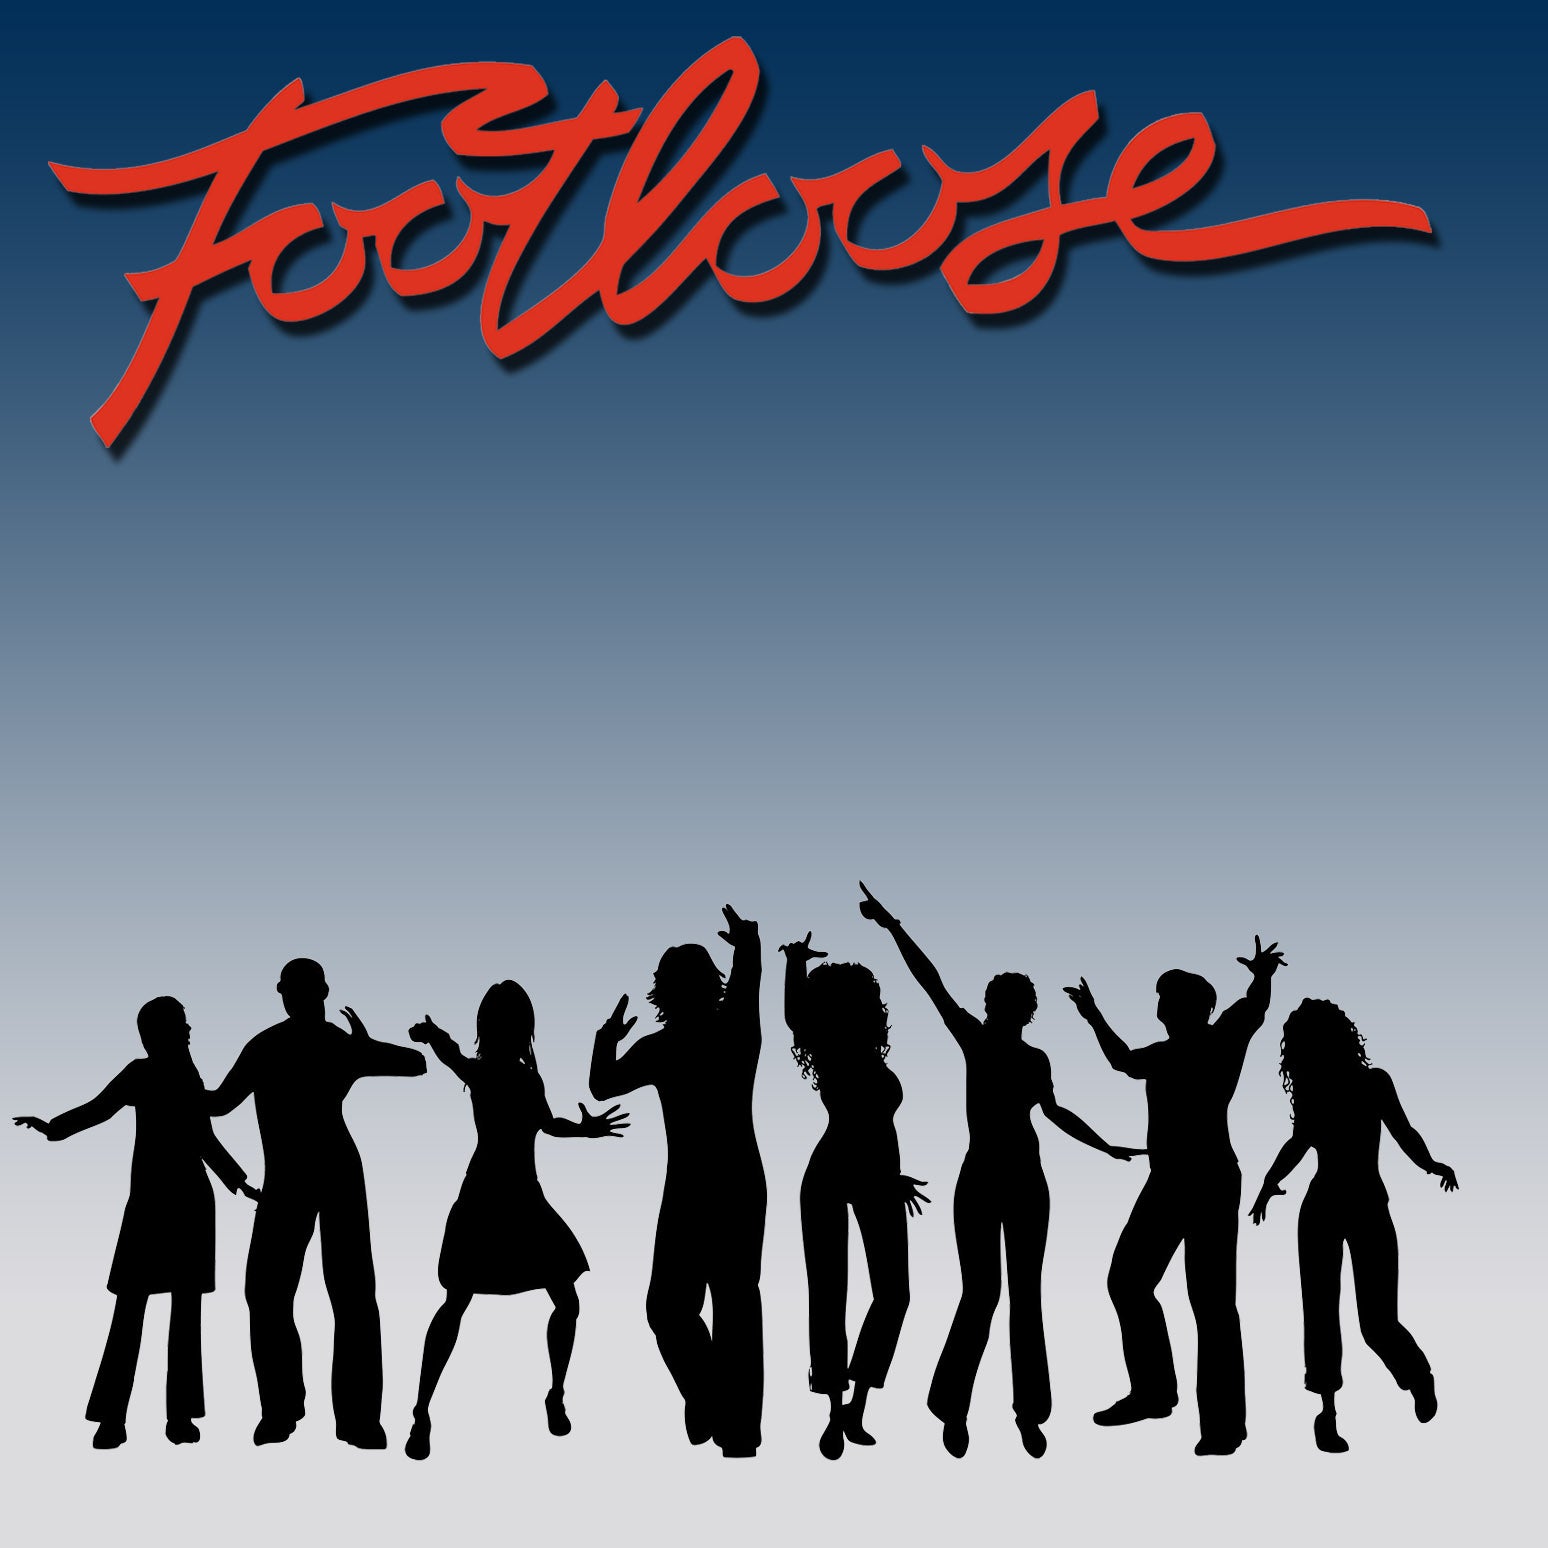 Footloose performed by Villa Victoria Academy 2019 - Active Image Media